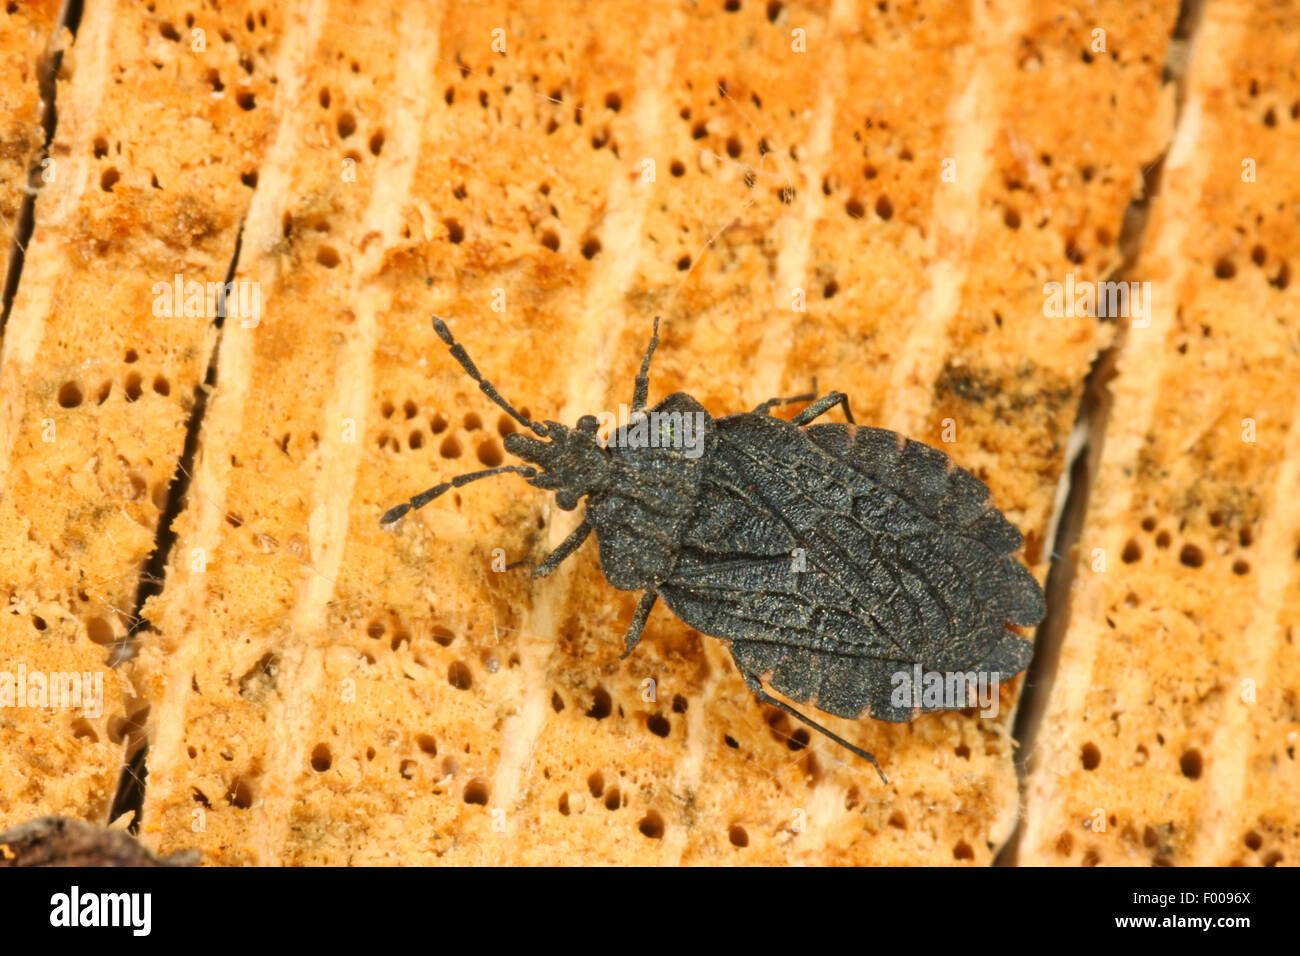 Flatbug (Aradus aterrimus), Austria Stock Photo